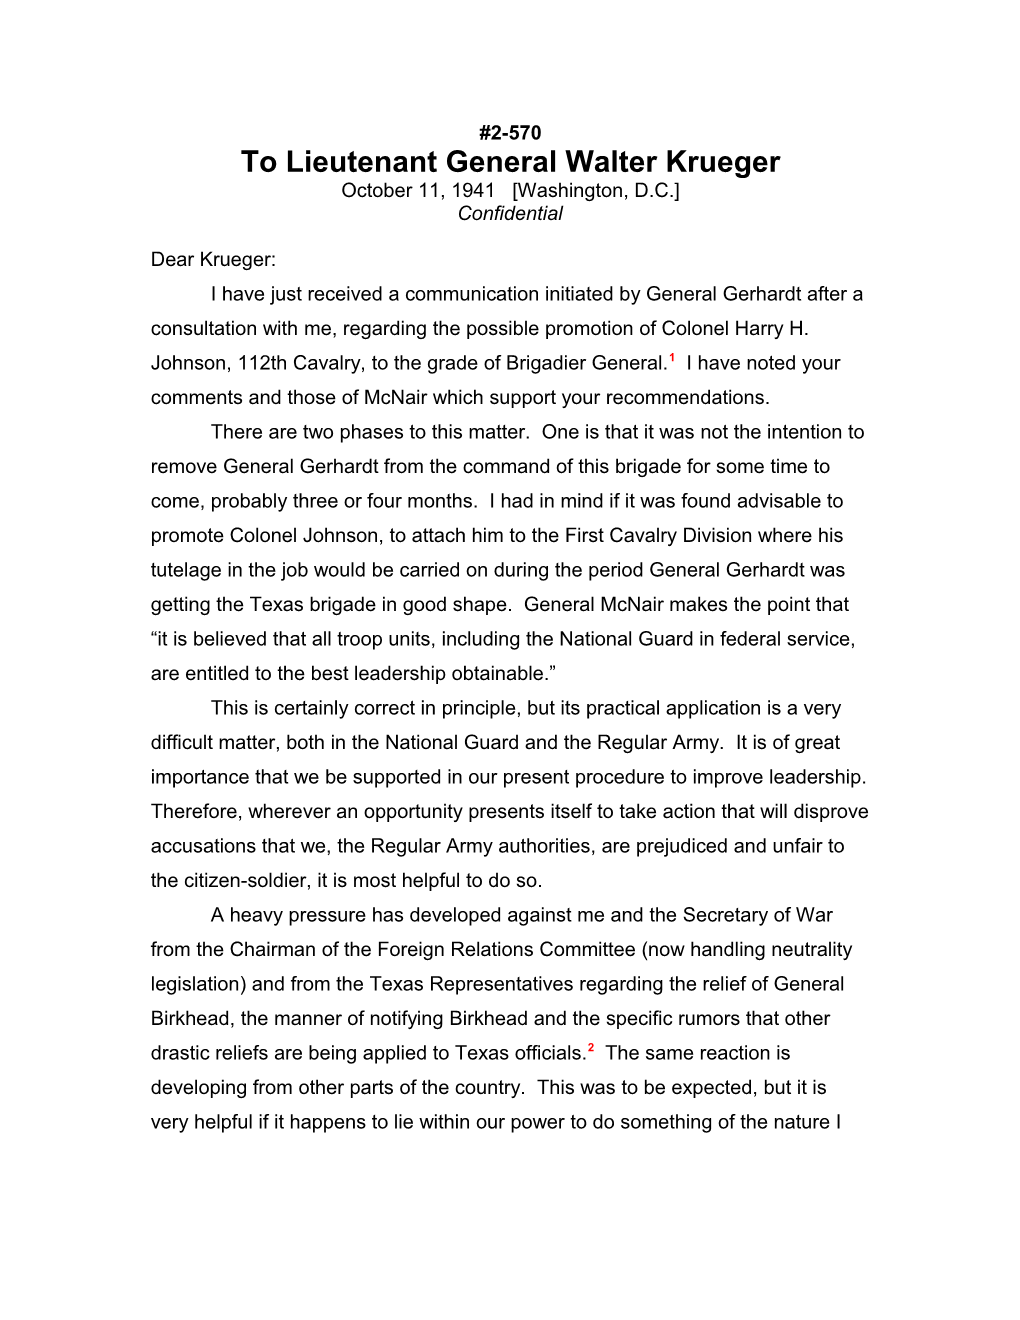 To Lieutenant General Walter Krueger